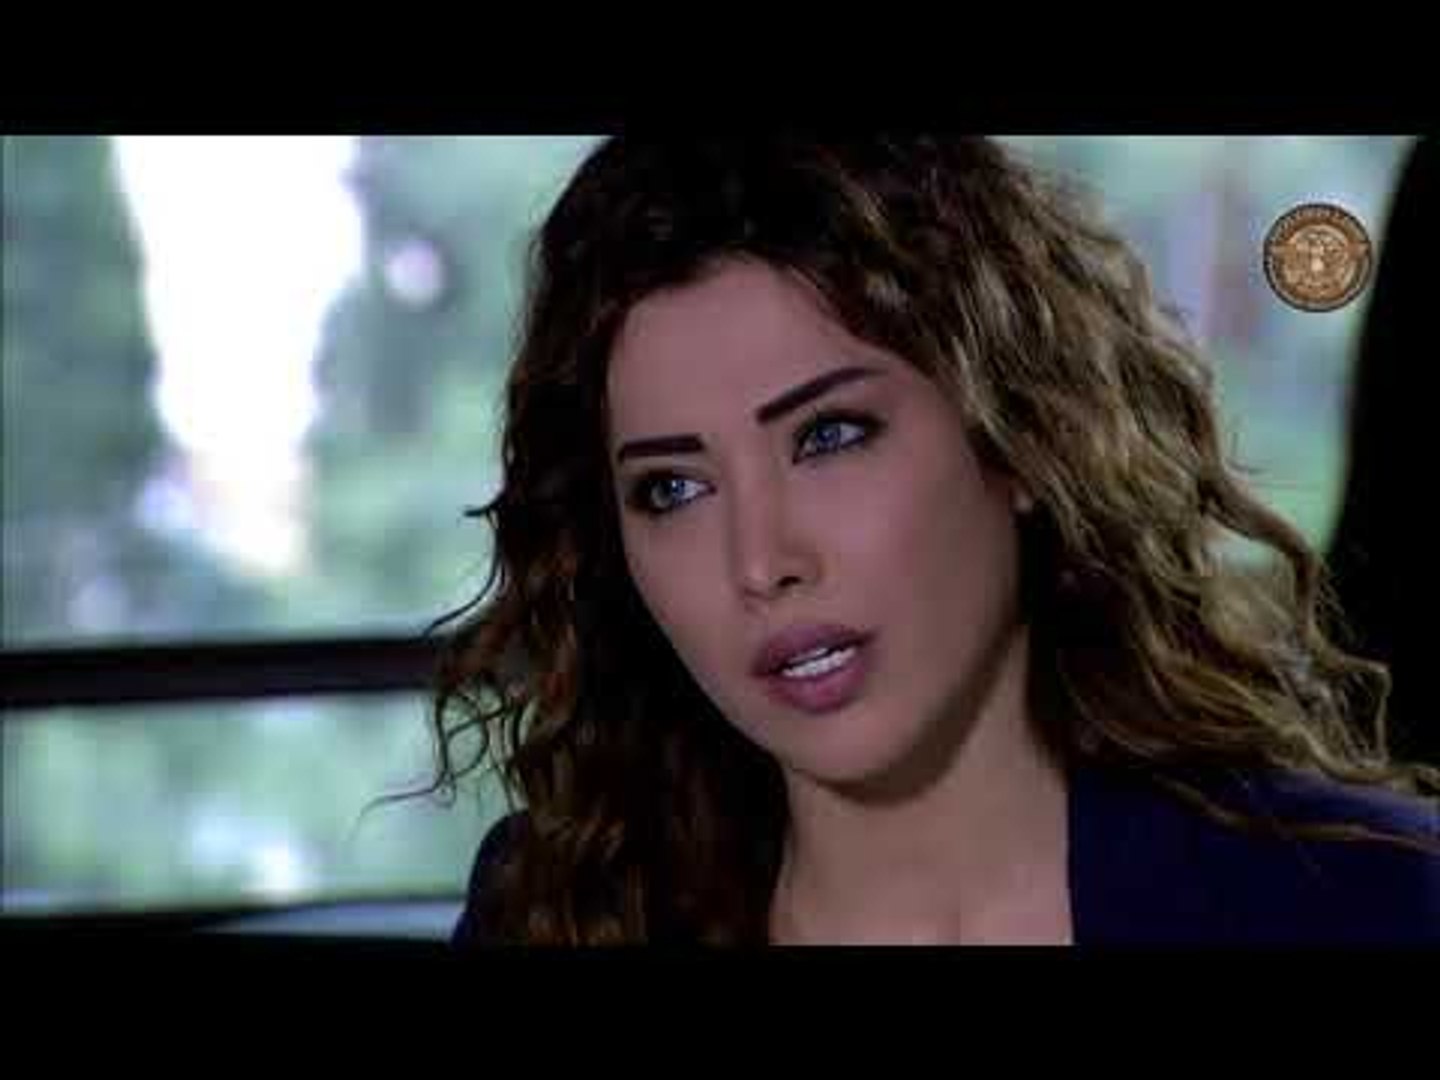 مسلسل وجوه وراء الوجوه ـ الحلقة 17 السابعة عشر كاملة HD | Wojouh Waraa Al  Wojouh - فيديو Dailymotion